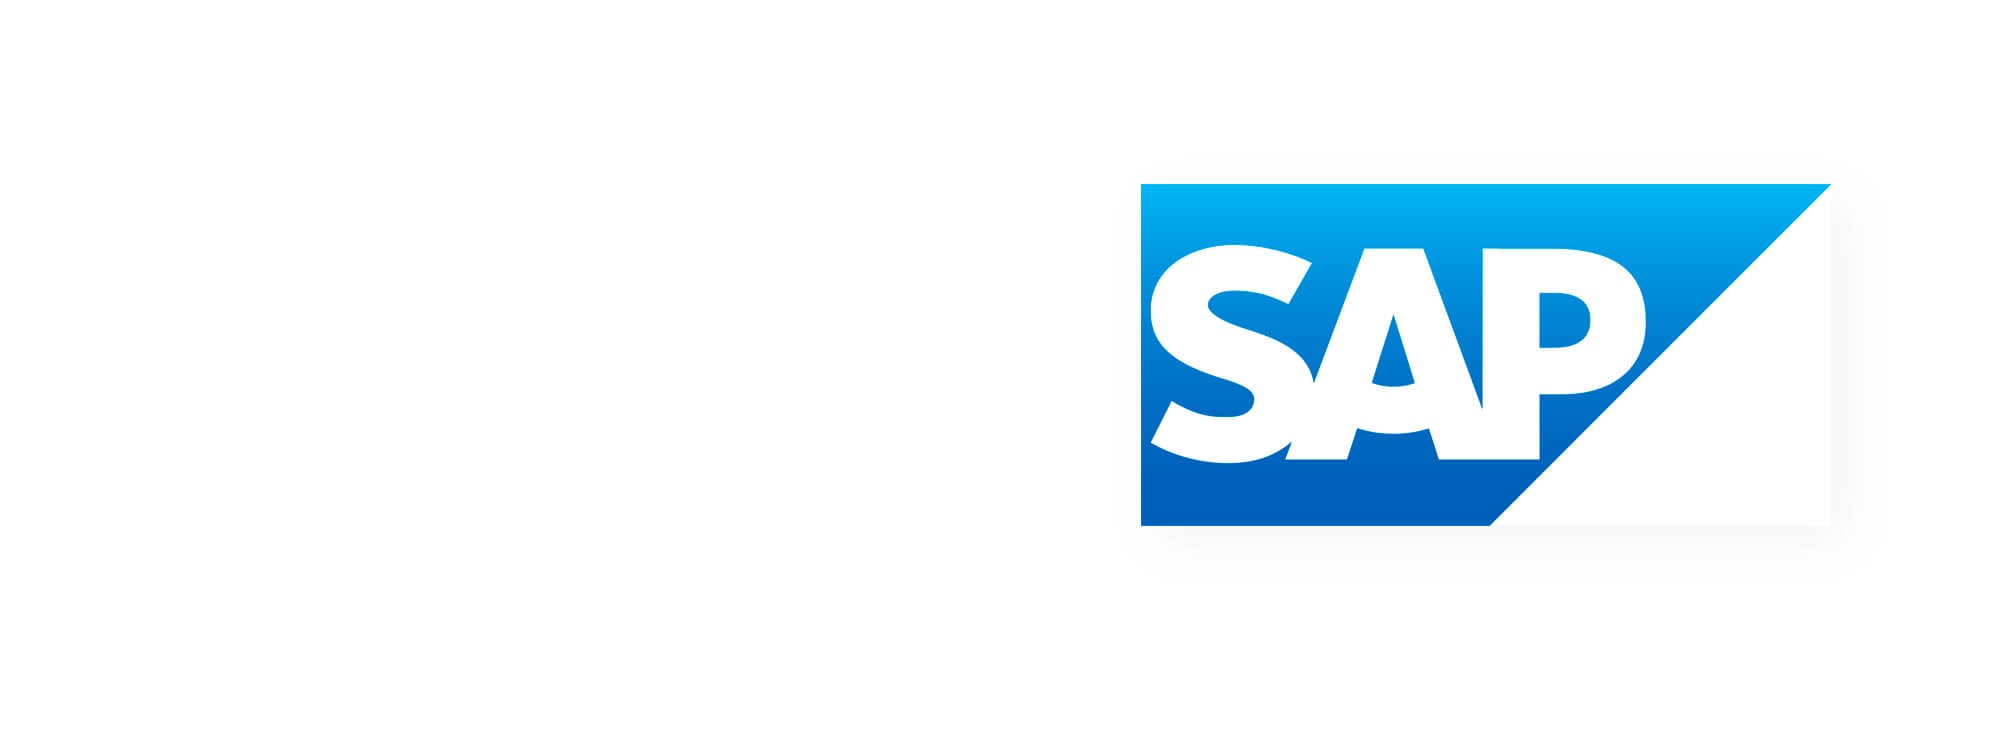 Firmenlogo SAP. Weiße Schrift auf blauen Hintergrund.